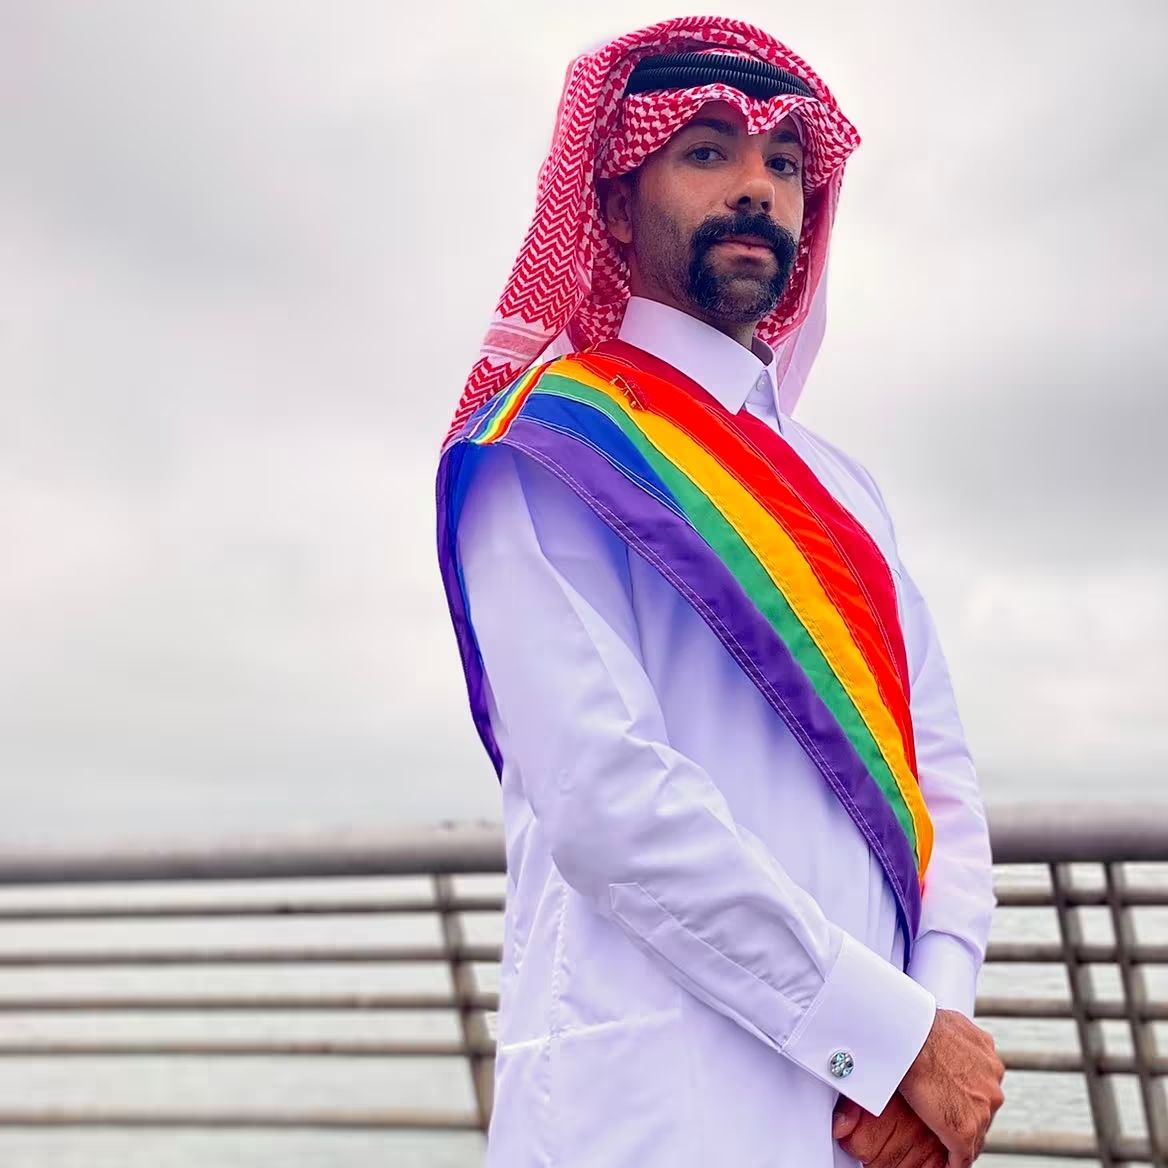 Homophobie in Katar: Warum sind plötzlich alle empört?